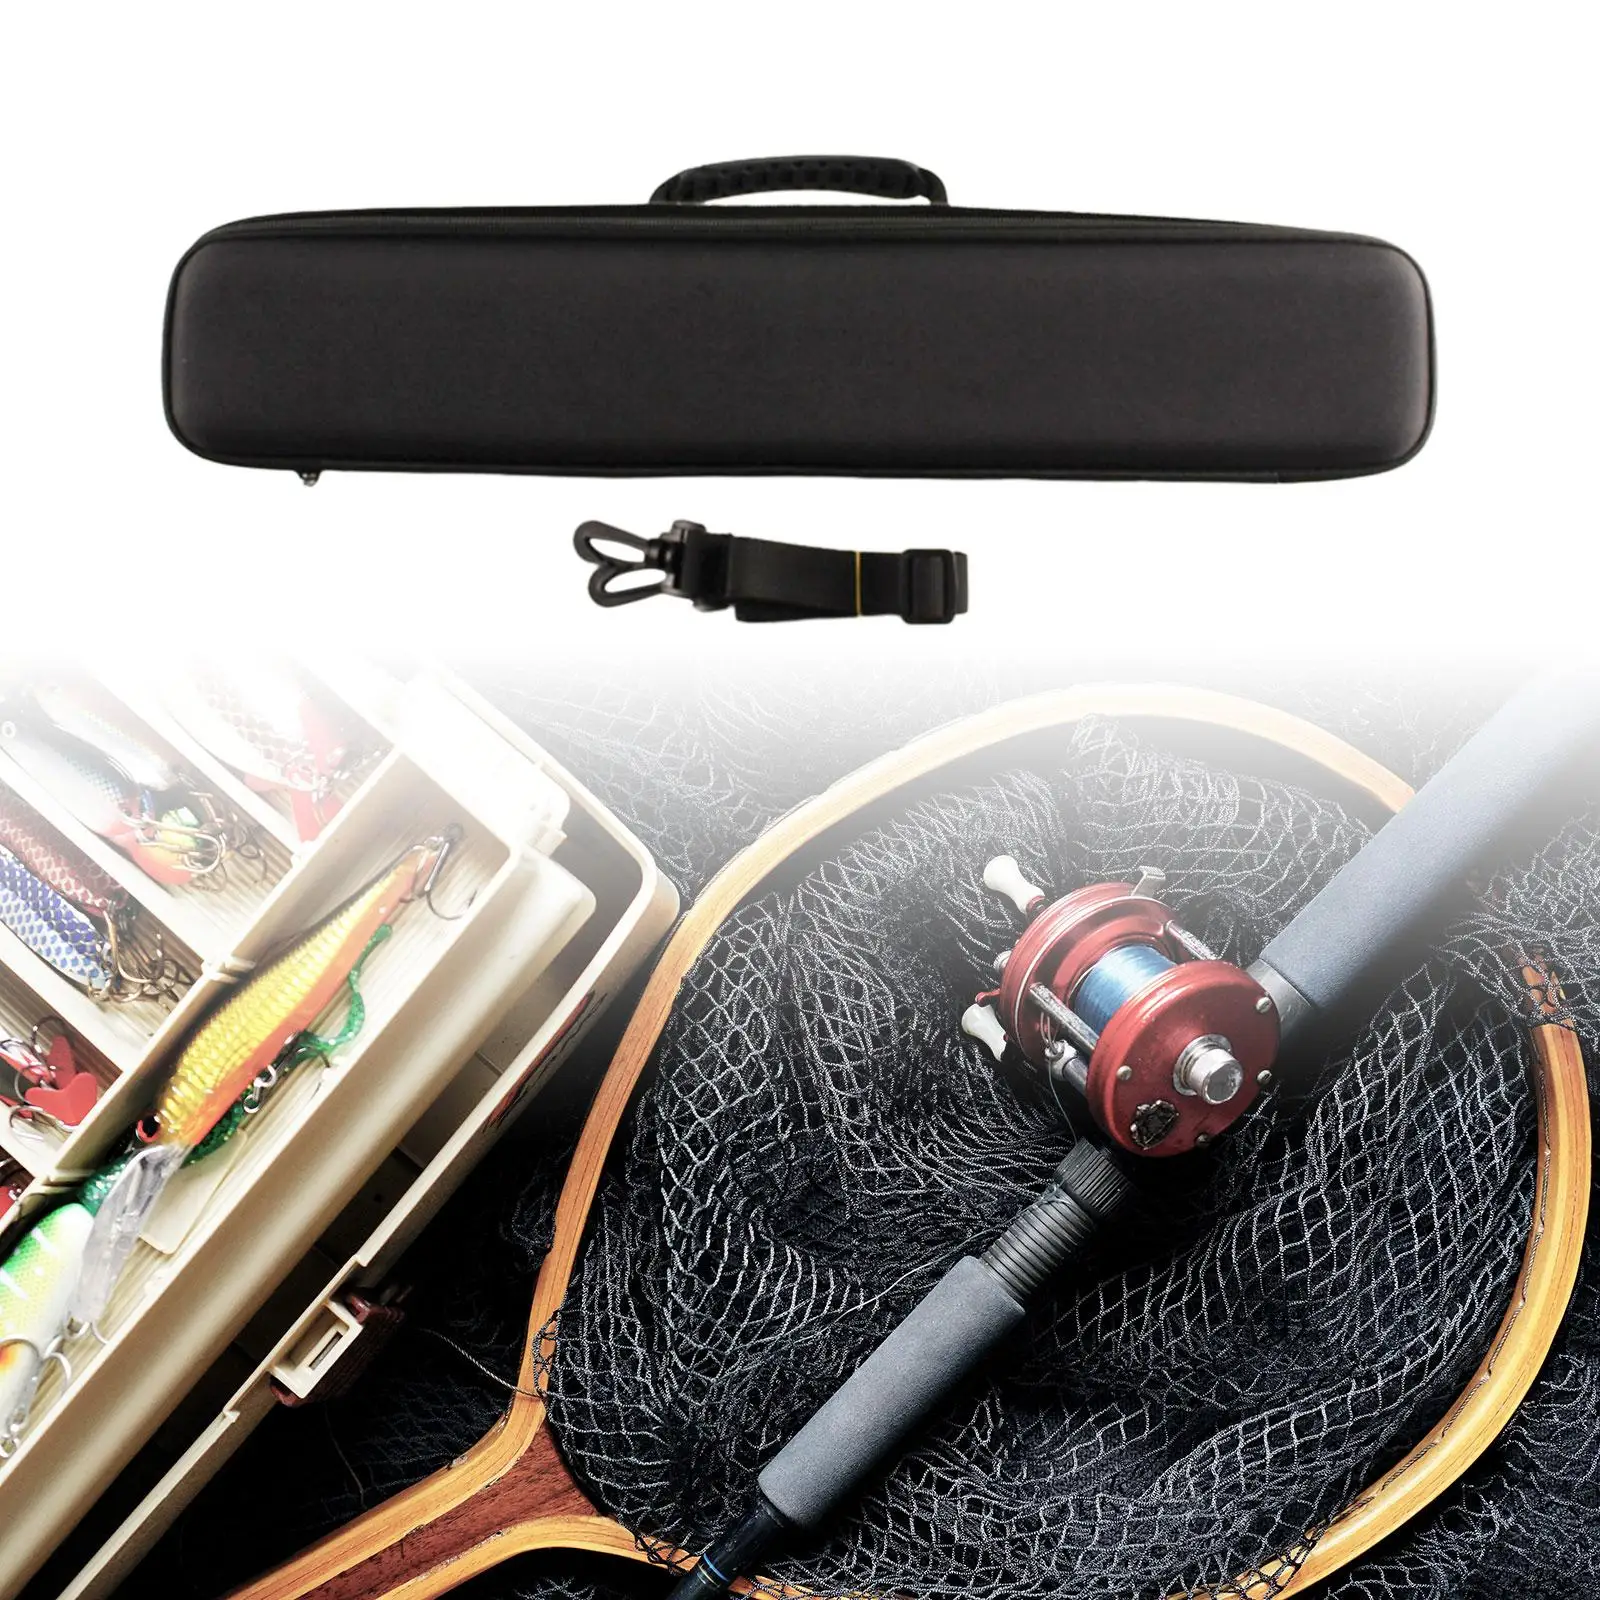 Fishing Tackle Storage Bag, Storage Case EVA Adjustable Shoulder Strap Holder Carry Bag Fishing Rod Bag for Rod Outdoor Lures